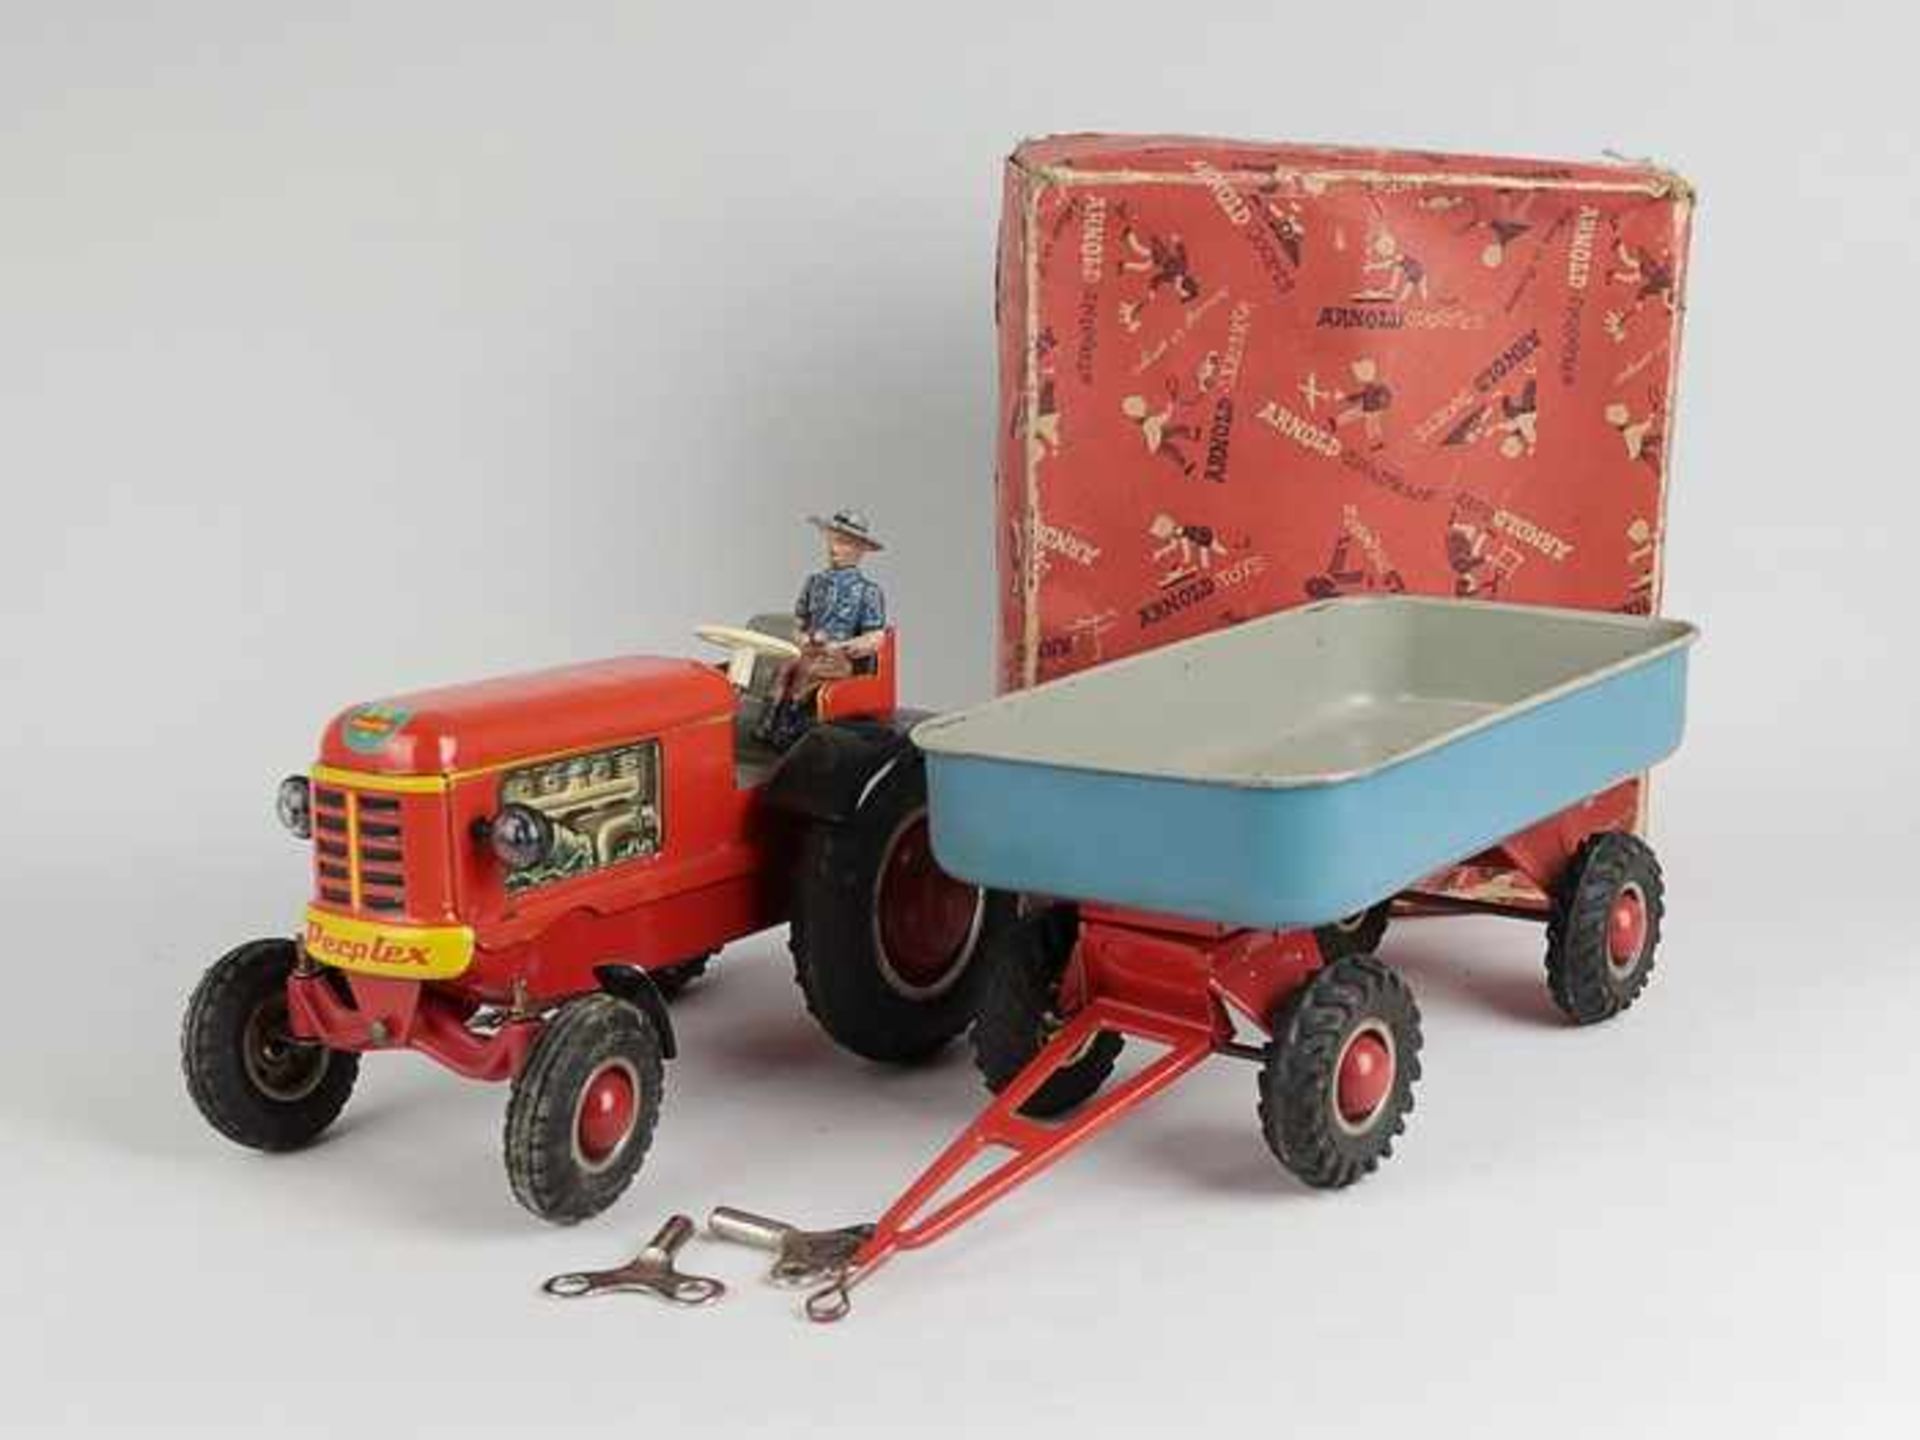 Arnold - Blechspielzeug1950/60er J., Traktor m. Anhänger, Perplex, Blech, rot/blau lakiert/litho.,